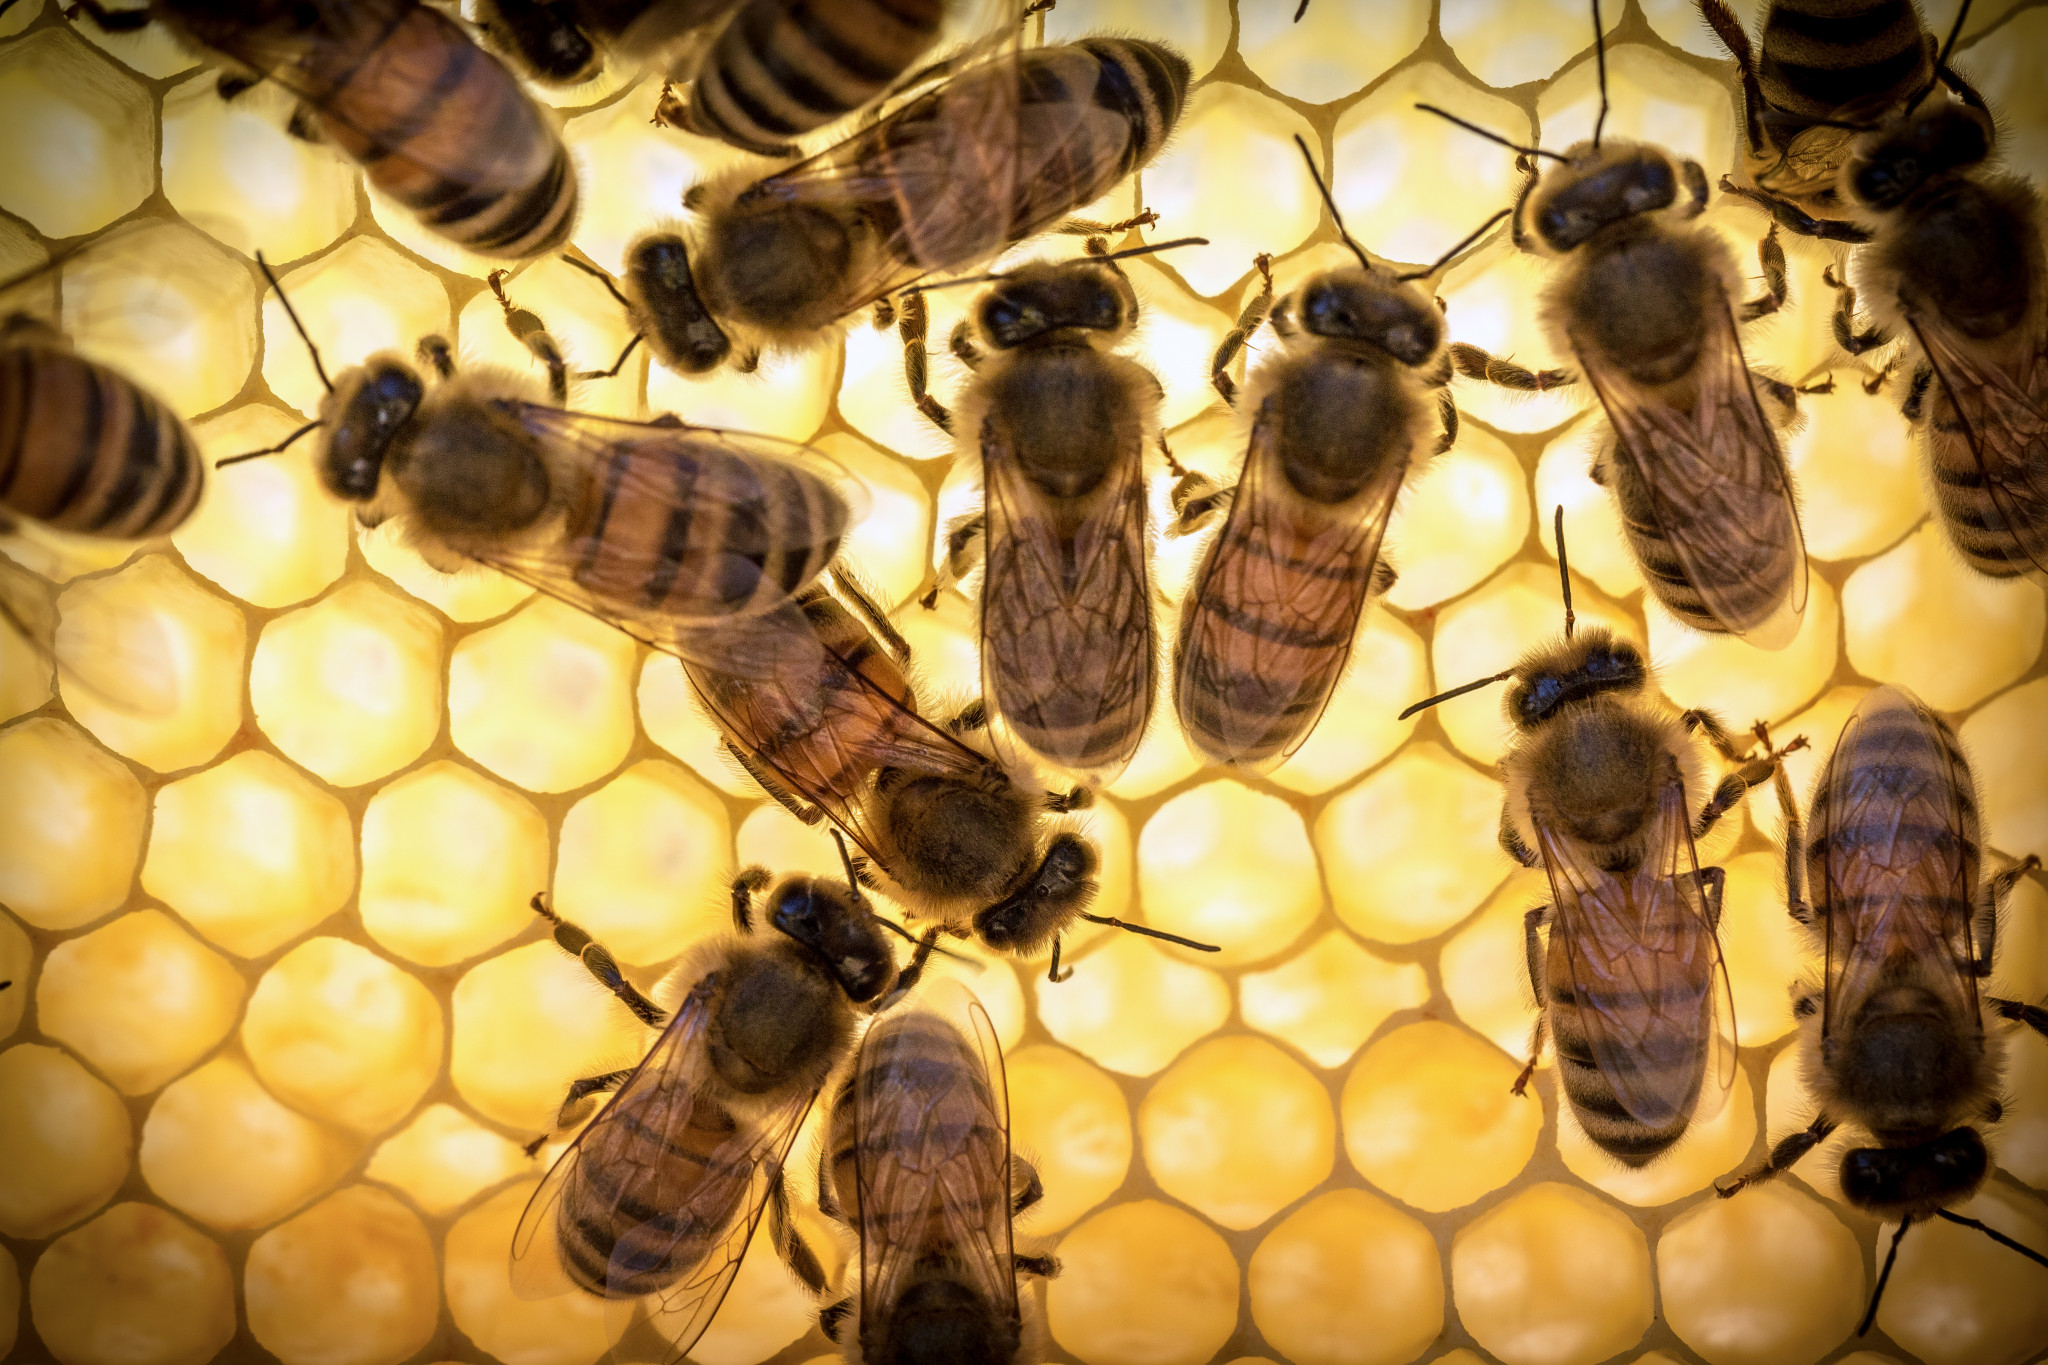 Die Anwendung von Bienen-Gelée Royale in der Nacht wird nicht empfohlen, da sie unter ihrem Einfluss die nervöse Aktivität und mögliche Schlaflosigkeit verstärkt